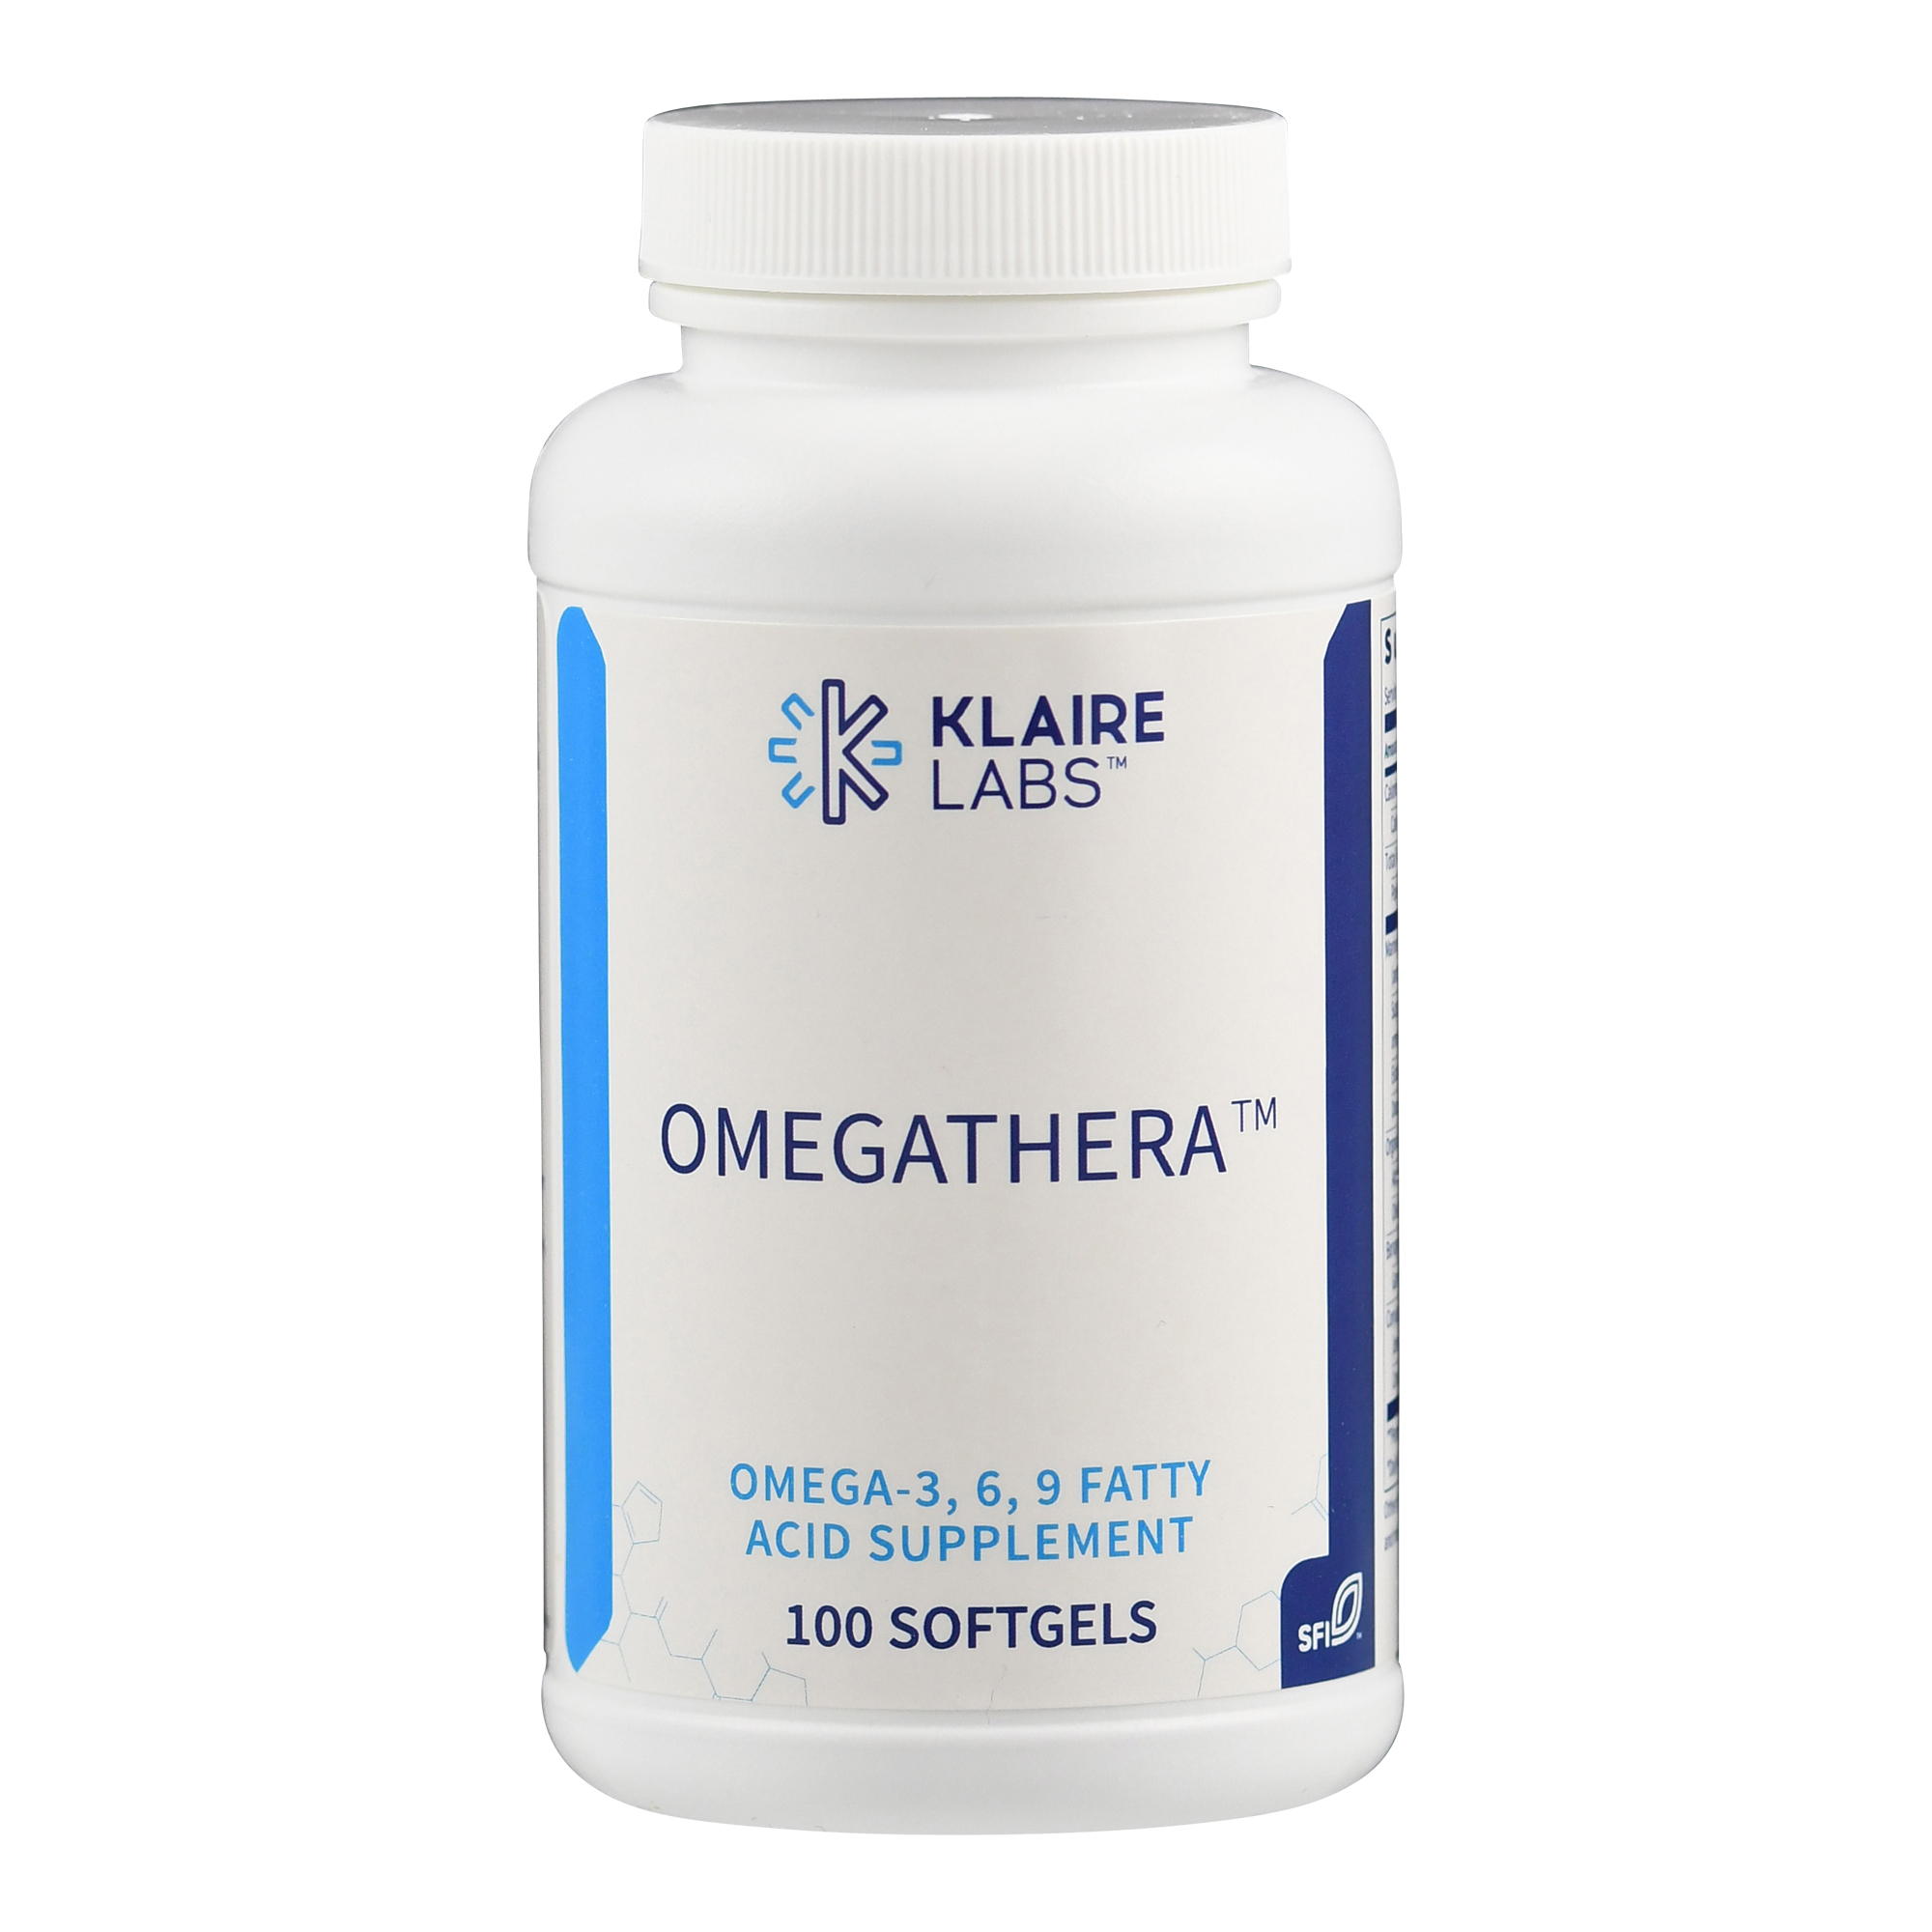 Omegathera